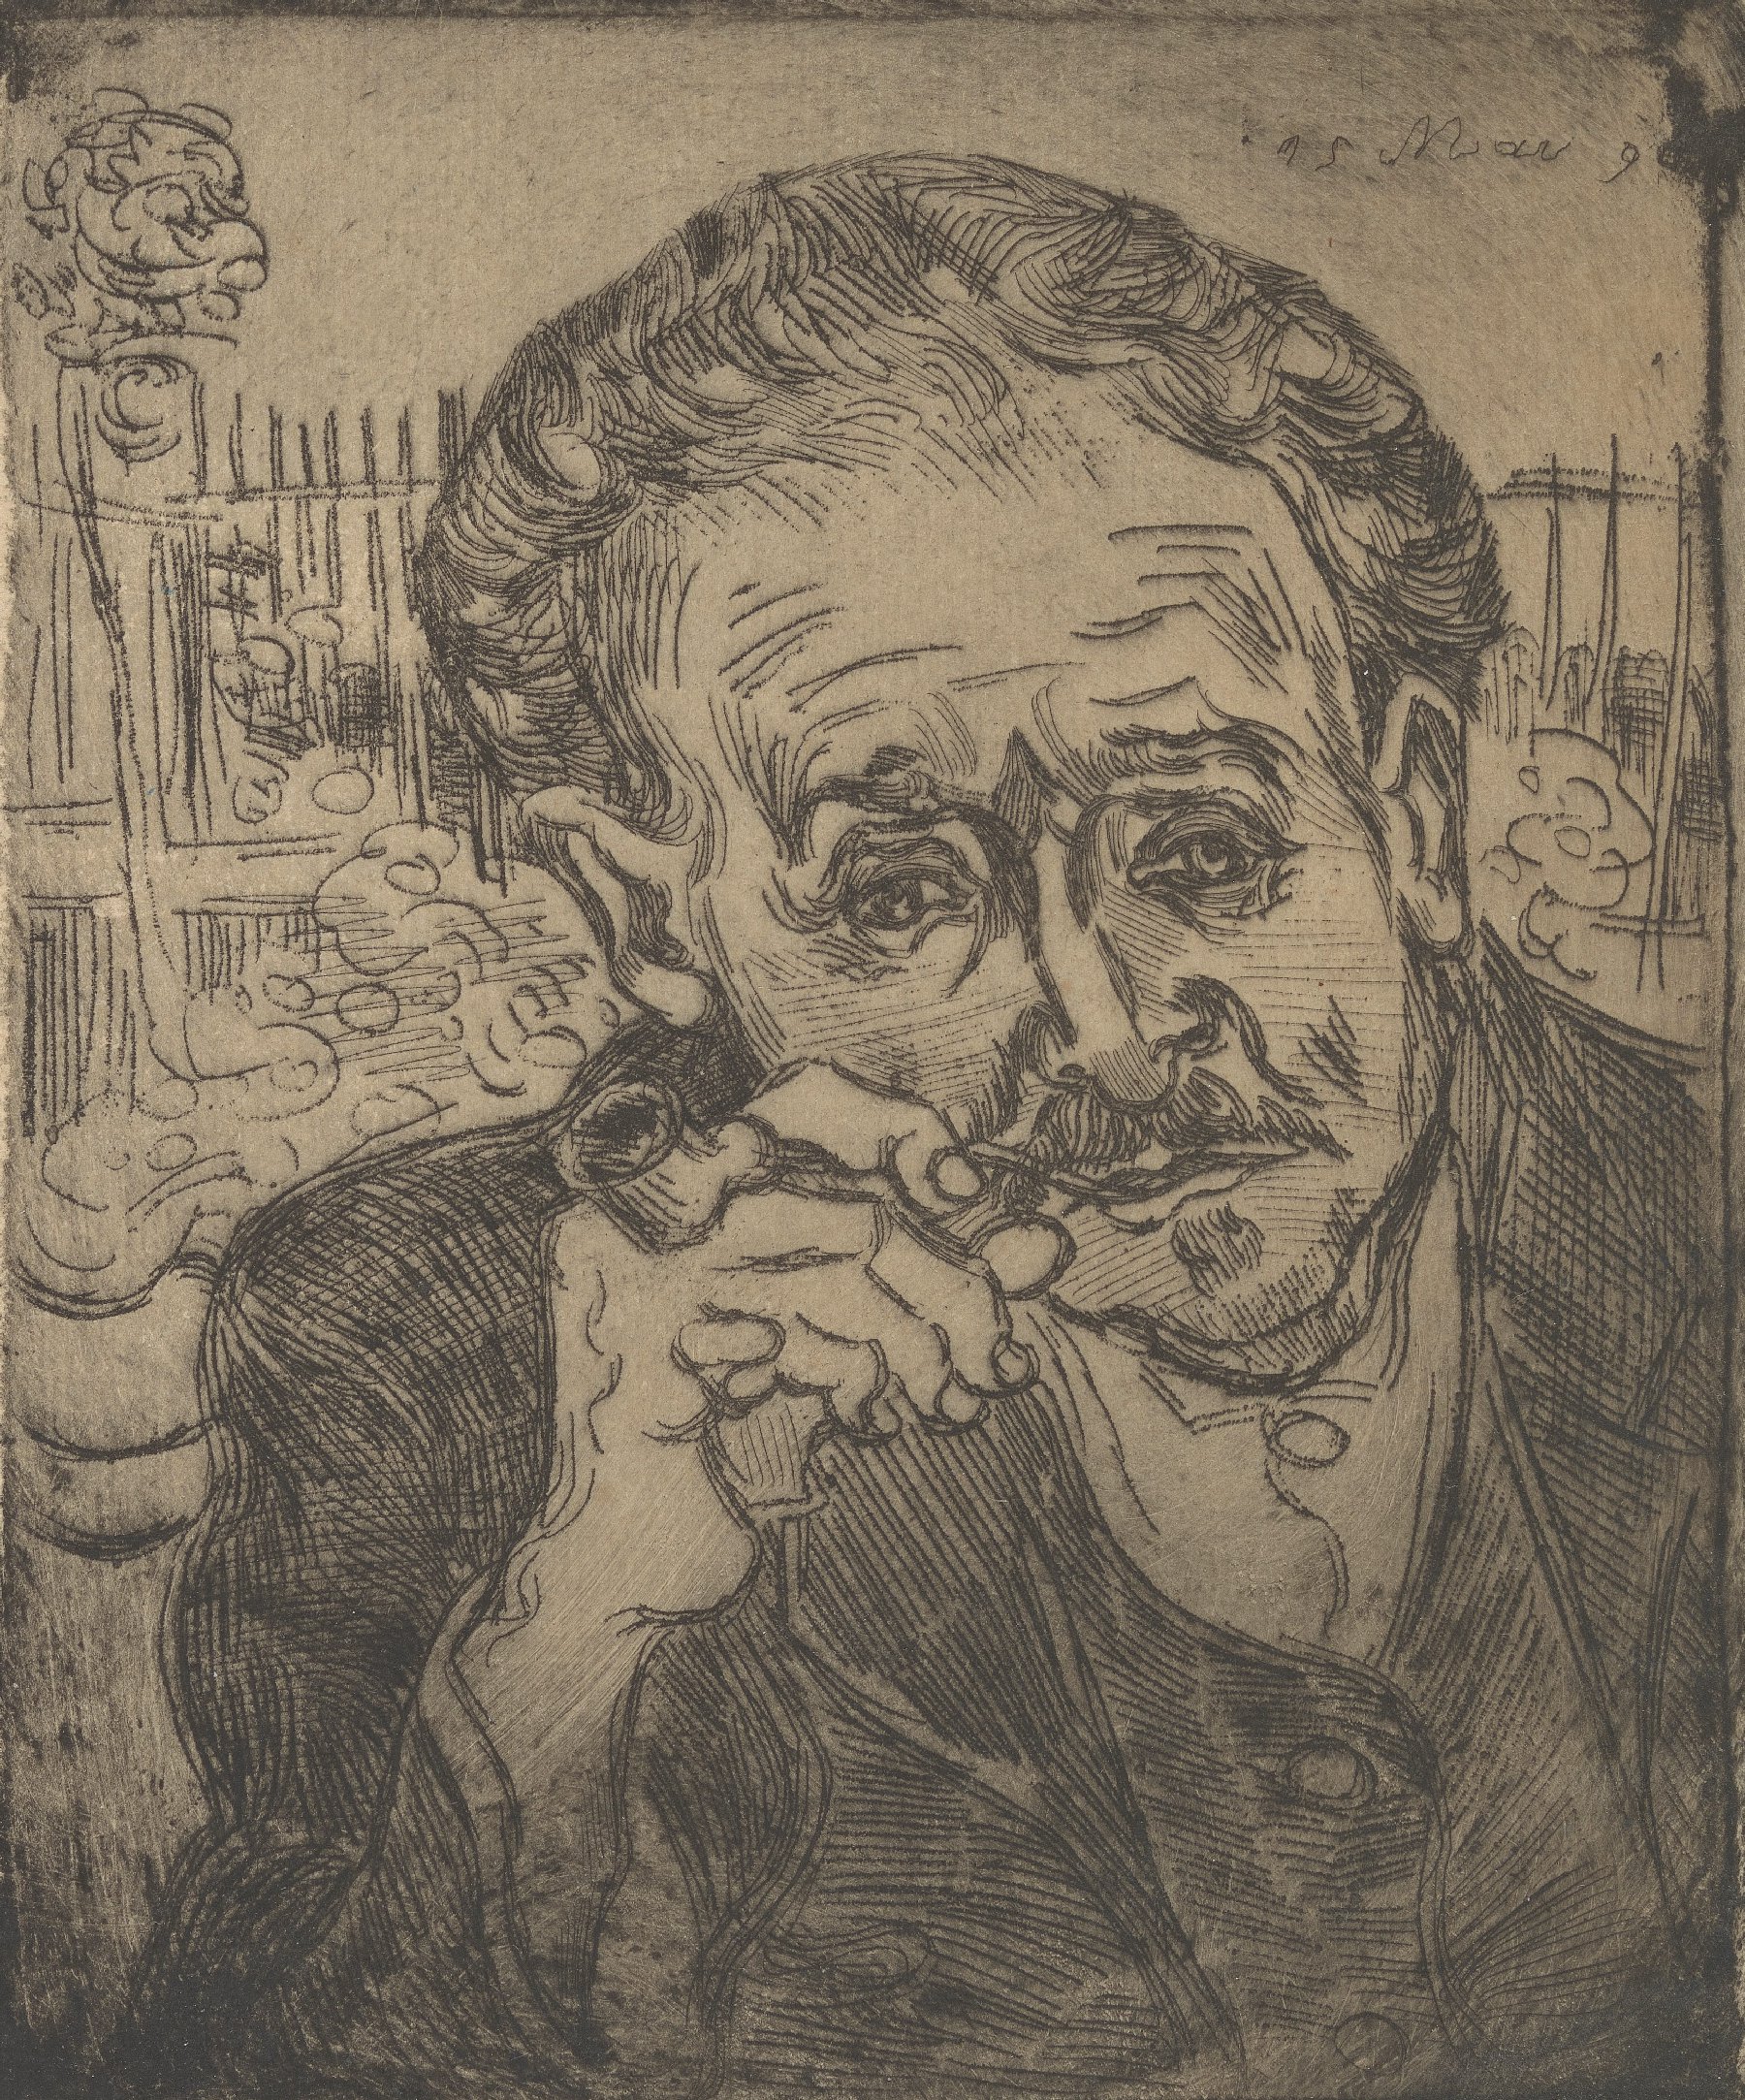 Portret van dokter Gachet Vincent van Gogh (1853 - 1890), Auvers-sur-Oise, juni 1890